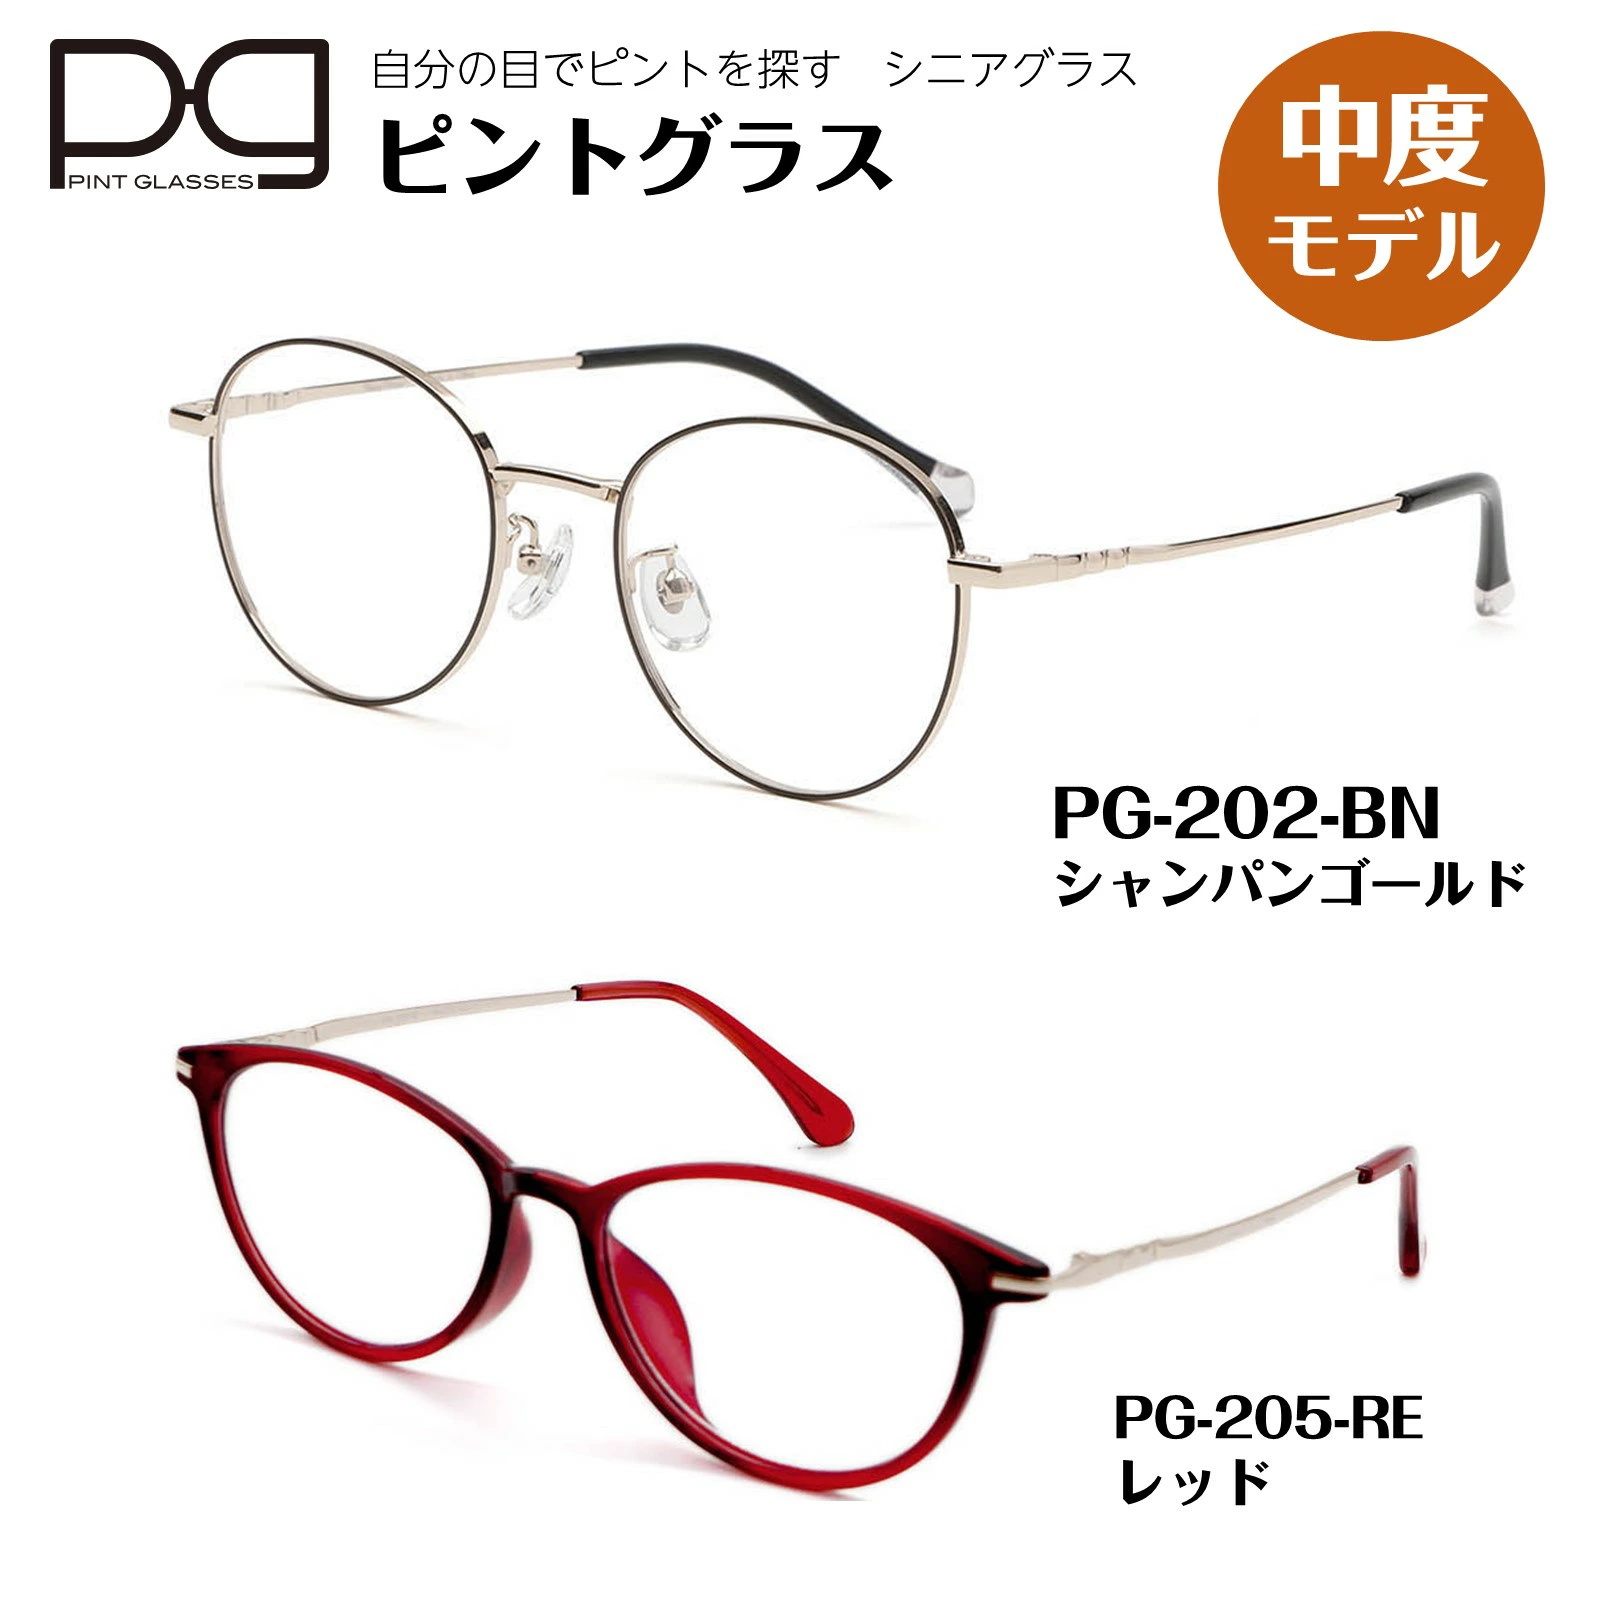 ピントグラス 正規販売店 中度 pint glasses 1年保証 TVCM シニアグラス 老眼鏡 メンズ レディース ブルーライトカット プレゼント